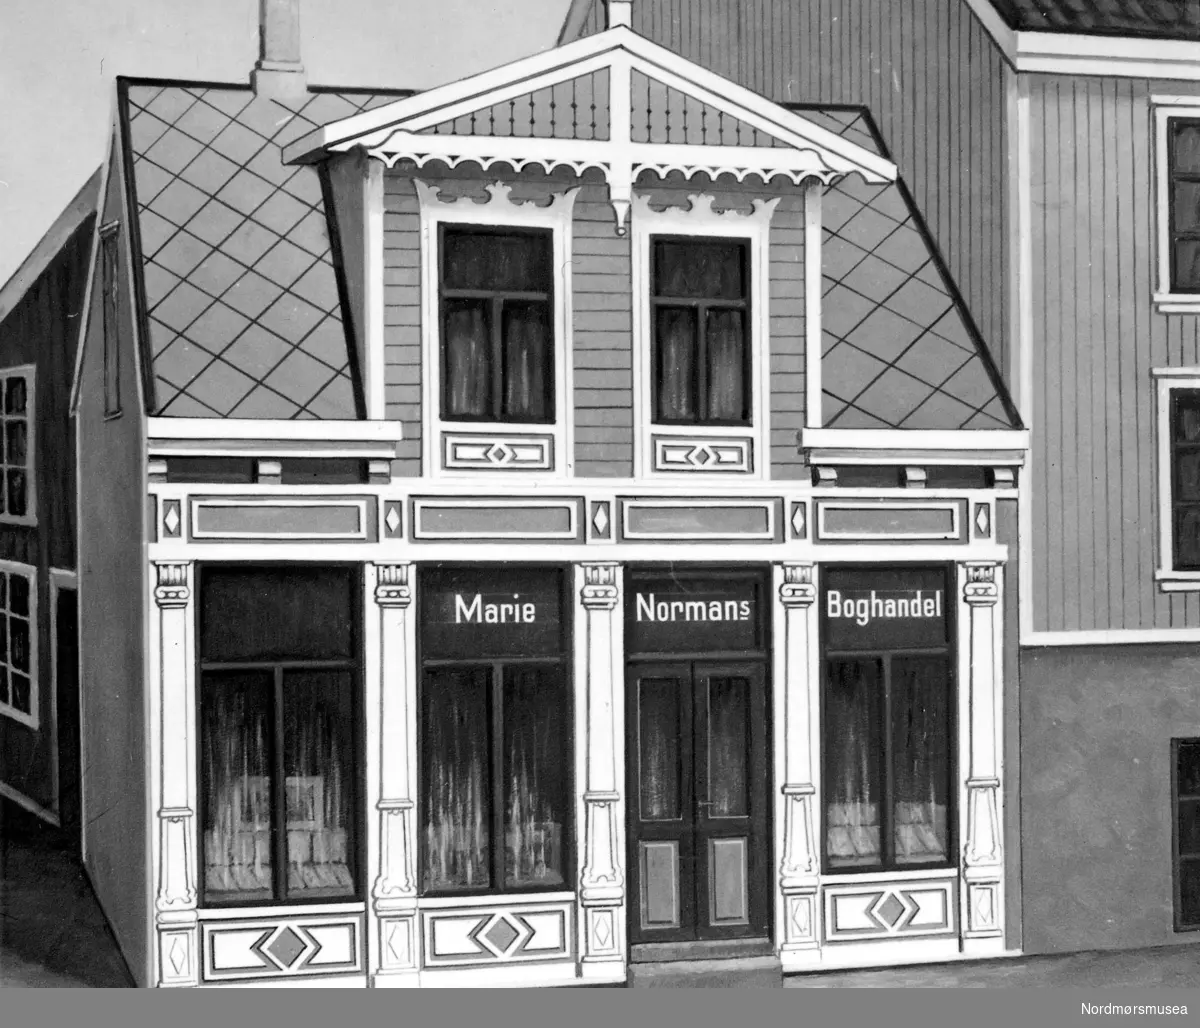 Maleri av Marie Normans Boghandel, her trolig i Storgata 11 på Kirkelandet i Kristiansund. Firmaets stifter var Maren Marie Normann. Butikken som hun senere drev sammen med sin mann er forløperen til Sverdrups bokhandel, og ble grunnlagt av Maren Marie Musæus Normann, 33 år gammel, den 30. juni 1874, som er den dagen hun ble handelsberettiget hos magistraten. Butikken ble først åpnet i Toldbodbakken, men flyttet inn i nye lokaler som mannen hennes reiste på bygslet grunn i Storgaten 11 i 1879. Året før hadde hun giftet seg med garverimester og handelsborger Helge Barmann, og da bokhandelen stod ferdig fikk den tilføyd efgs. bak firmanavnet, om ikke offisielt før i 1892. Tegningen viser med andre ord fra butikken før denne tid, da efterfølger ennå ikke er lagt til butikknavnet. Flyttingen skyldtes at eier Herlofsen selv ønsket å starte bokhandel i lokalene. Men allerede i 1886 måtte bedriften flytte igjen da Melchior Riiber Meldahl som eide grunnen ønsket å selge tomten. Flyttingen ble utført ved at man rullet huset på stokker til den nye bygslede tomten i Torvgaten 3. Flere år senere fikk huset sitt eget nummer, og ble da Torvgaten 5. I 1891 giftet Margrethe Olise Barmann - datteren til Helge Barmann og hans hans første kone Josefine Laurette Poine Vogt - seg med Georg Sverdrup. Meningen var at paret skulle flytte til Amerika, men disse ble imidlertid endret da Helge Barmann ønsket at svigersønnen skulle overta bokhandelen. Georg Sverdrup overtok ledelsen av driften 1 juli 1891, og en eller to uker etterpå stod bryllupet. Og allerede i 1896 kjøpte han huset og forretningen, men ikke uten komplikasjoner. Da det forelå to eierskjøter måtte Georg Sverdrup ut med salgssummen to ganger til to eiere: Helge Barmann og Johanne Poine Vogt Westad. Men til slutt var hus og bedrift hans. I årene etter 1900 ekspanderte bedriften sterkt, og Torvsmuget 5 ble innkjøpt i 1907. Denne lå like ved Torvgaden 5 og var godt egnet til utvidelsen av bedriften. Likevel beholdt Georg Sverdrup bedriftnavnet Marie Norman efgs frem til 27. september 1926, da det ble meddelt firmaregisteret om navneendring til Sverdrups bokhandel. Men allerede siden 1920 hadde det da vært vanlig å svare Sverdrups bokhandel i telefonen. Men selv om bedriften hadde ekspandert mye frem til 1929, var det fortsatt behov for ekspansjon, og 3. mai 1930 ble det inngått kjøpekontrakt mellom Fosna Maalag og Georg Sverdrup om kjøp av den gamle Kaffistova på Torvet. Salget ble godkjent , og huset overtatt av Georg Sverdrup 1. oktober 1930. Den nye adressen ble Torvgaten 9, og her drev Georg Sverdrup bokhandel frem til søndag 28. april 1940, da butikklokalene brant ned under bombingen av byen. Georg Sverdrup drev da bokhandelen fra sitt hjem i Rosentræders gate 1 som overlevde brannen, inntil de nye lokalene i Nedre Enggate 5-7 stod ferdig i høsten 1949. Per dags dato (2009) heter butikken Ark Sverdrup, og er fortsatt å finne i de samme lokalene. Fra Nordmøre museums fotosamlinger.